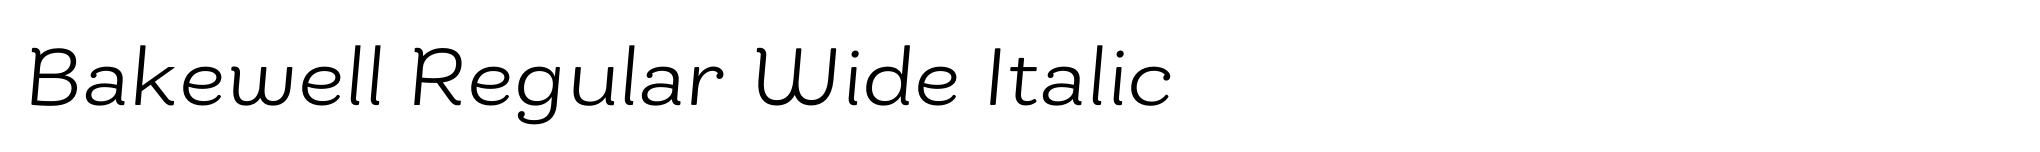 Bakewell Regular Wide Italic image